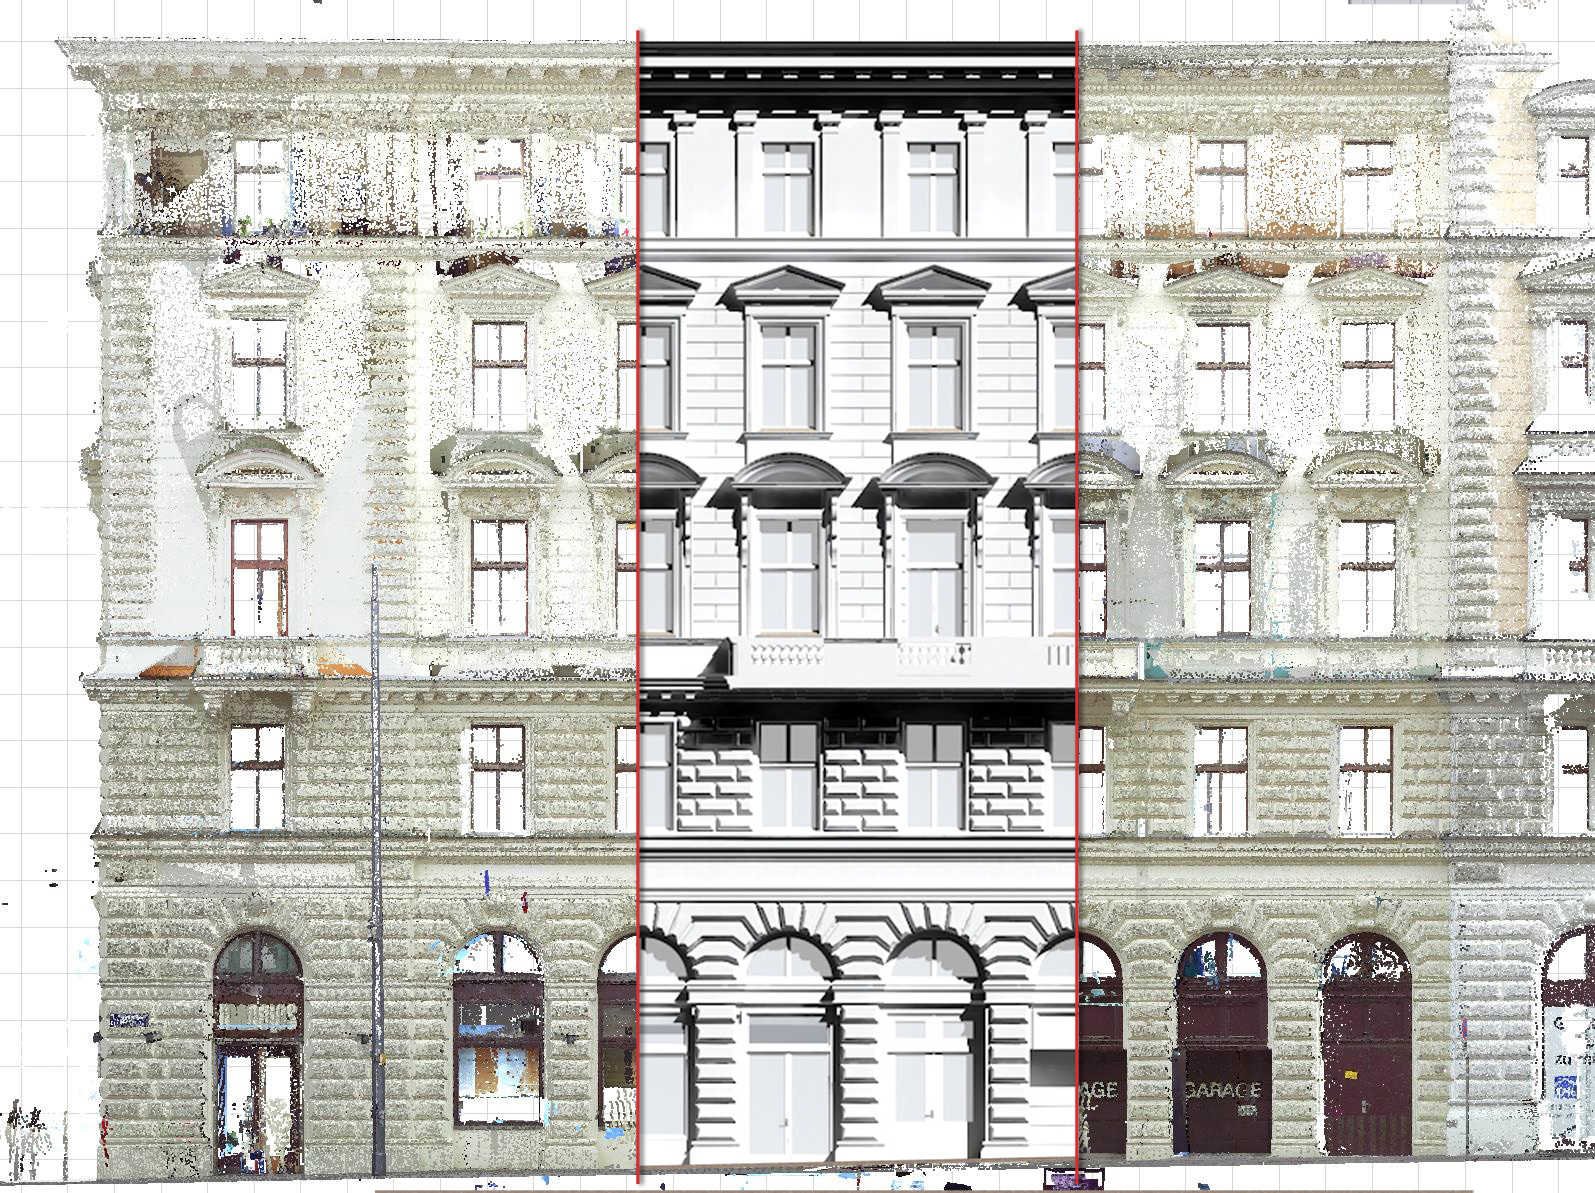 Volksgartenstrasse Wien - 3D Scanning & Modelling - RoomBuus Linz